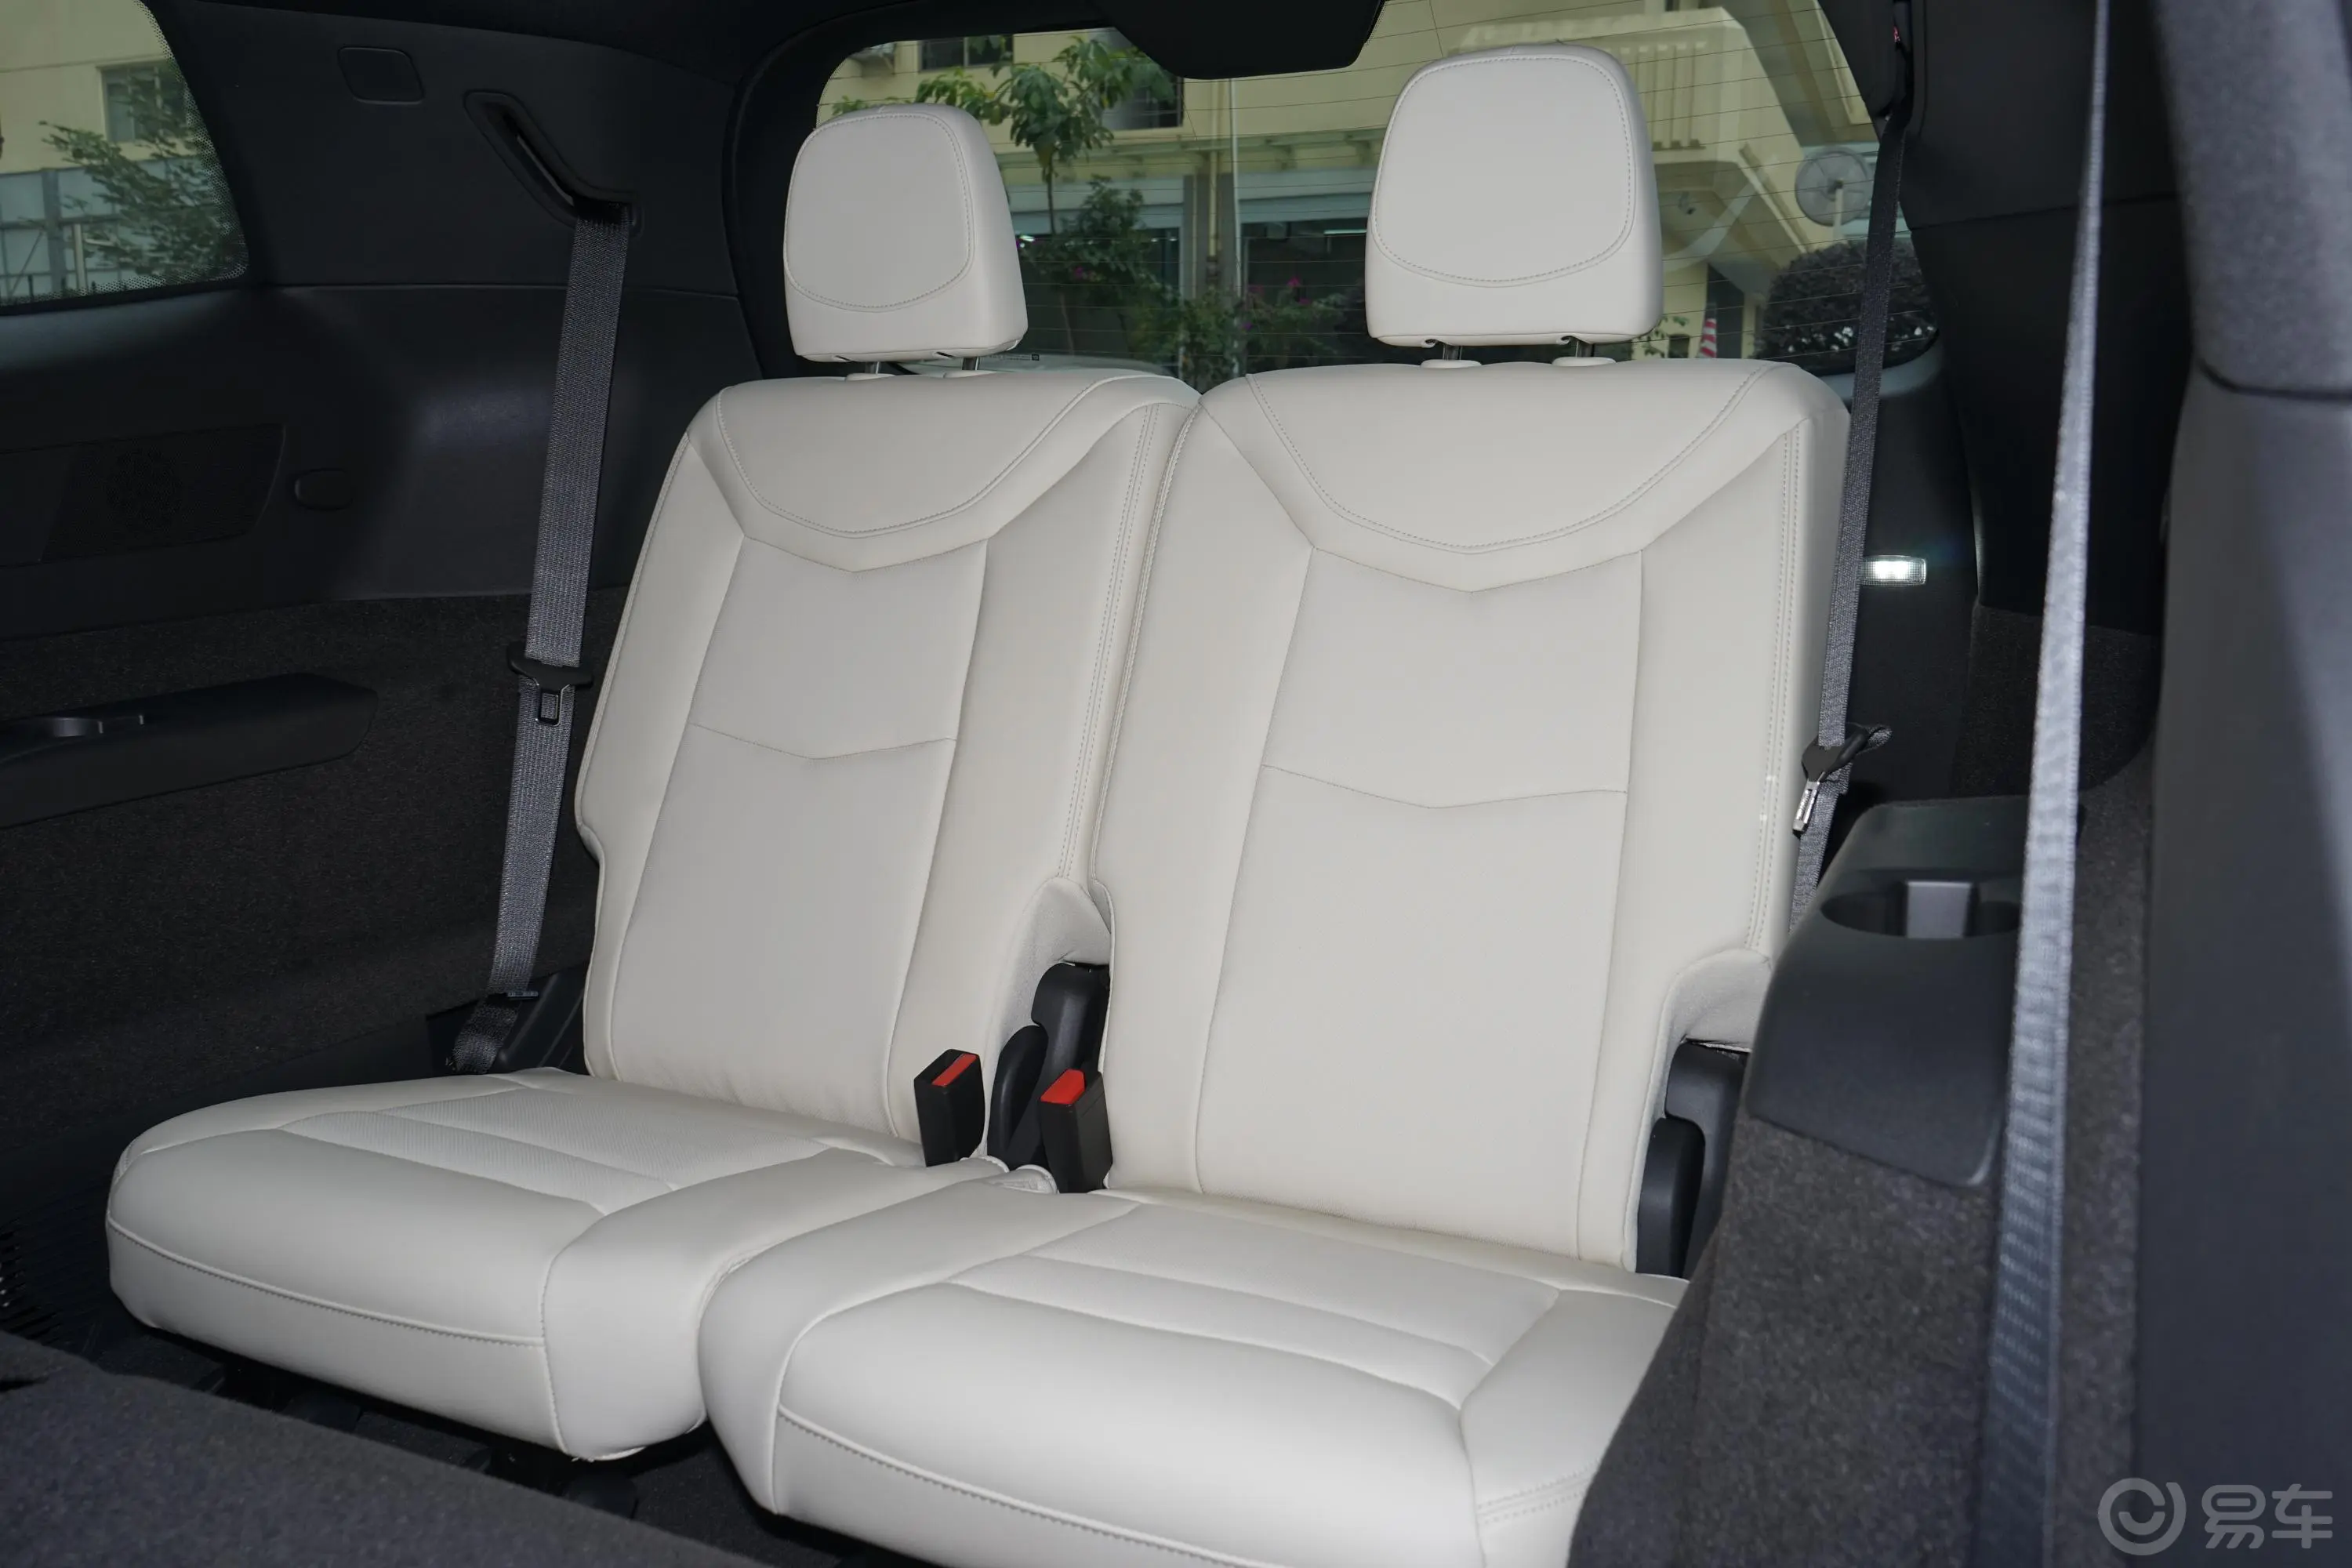 凯迪拉克XT628T 两驱 豪华运动型-至享安全版 7座第三排座椅